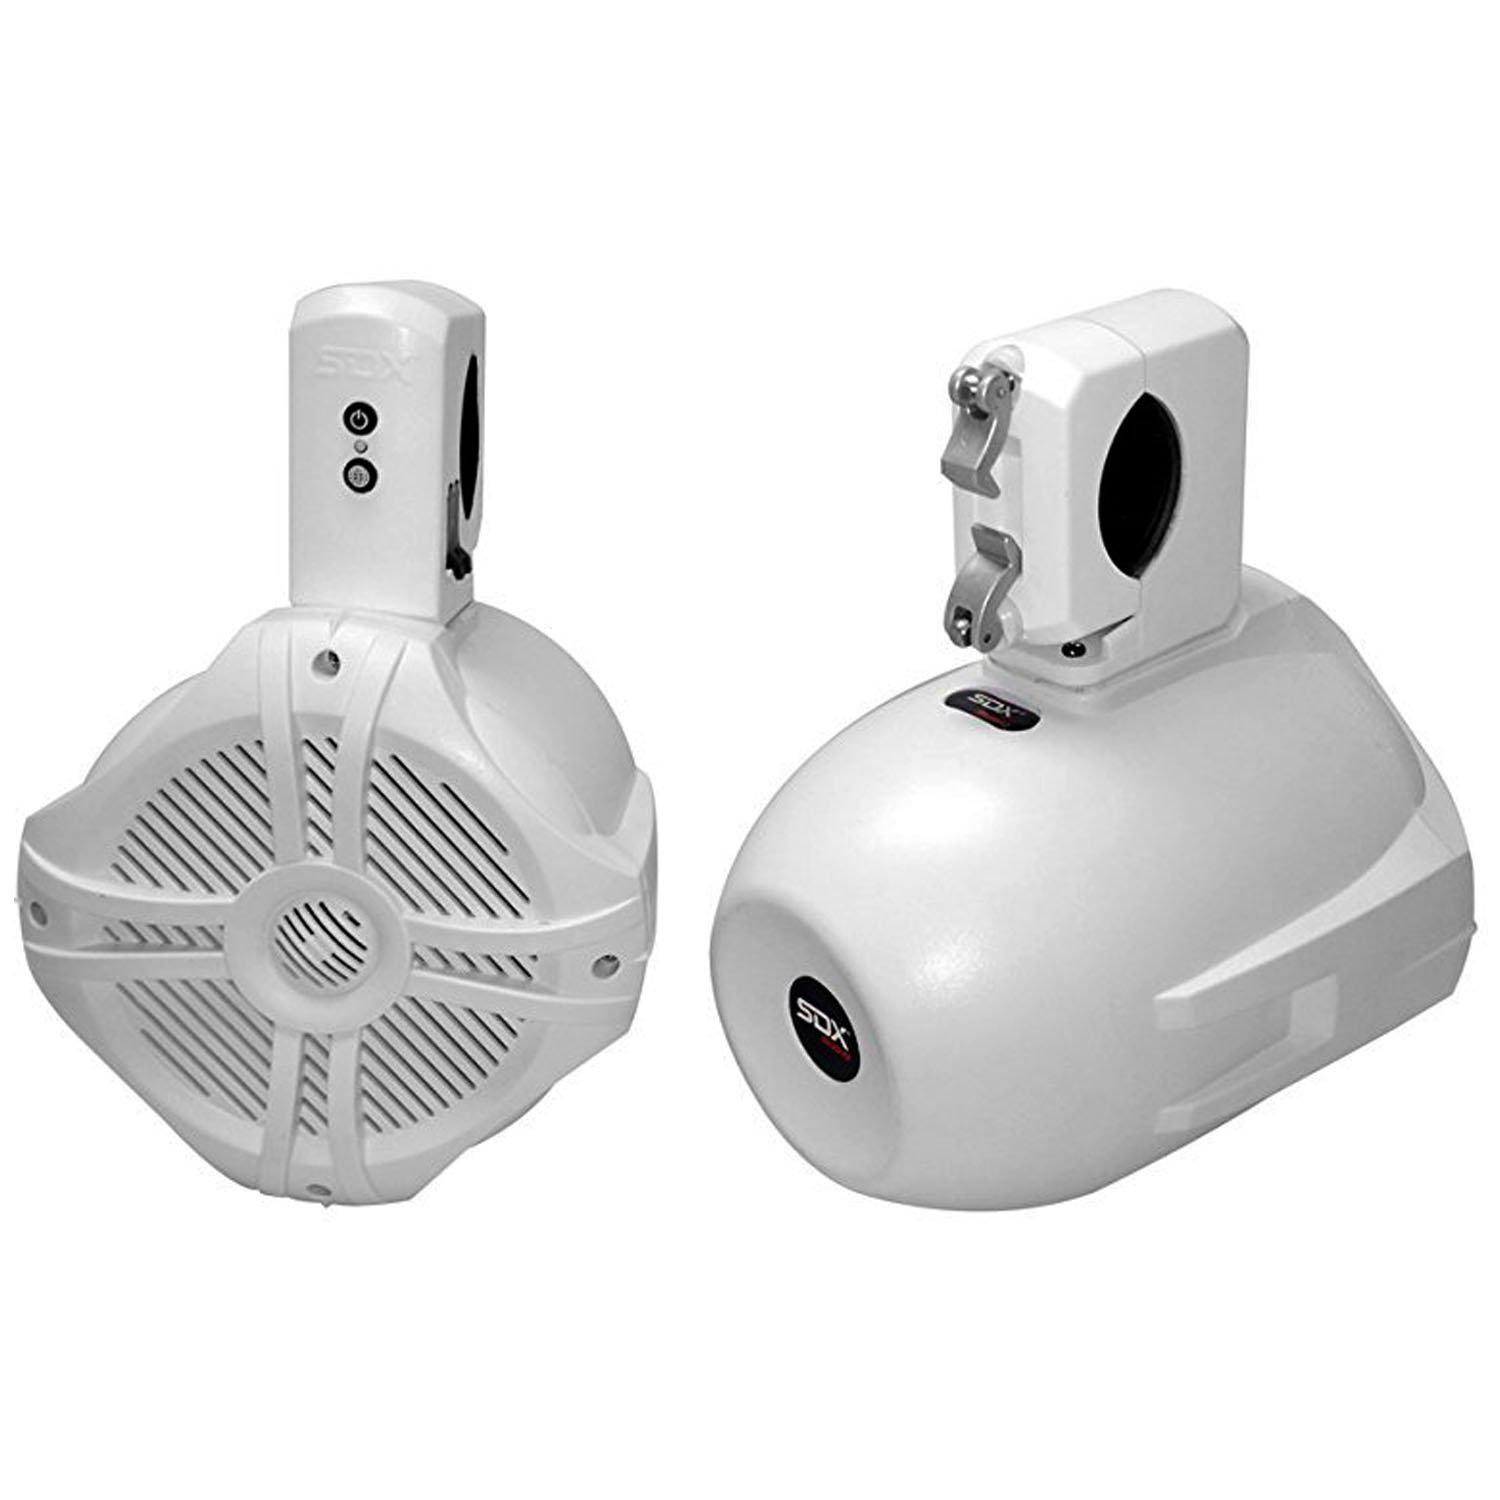 Sondpex sdx pro audio - 6.5 inch 250w wireless marine speaker system (pair) - wakeboard tower/waketower and rollbar/rollcage compatib